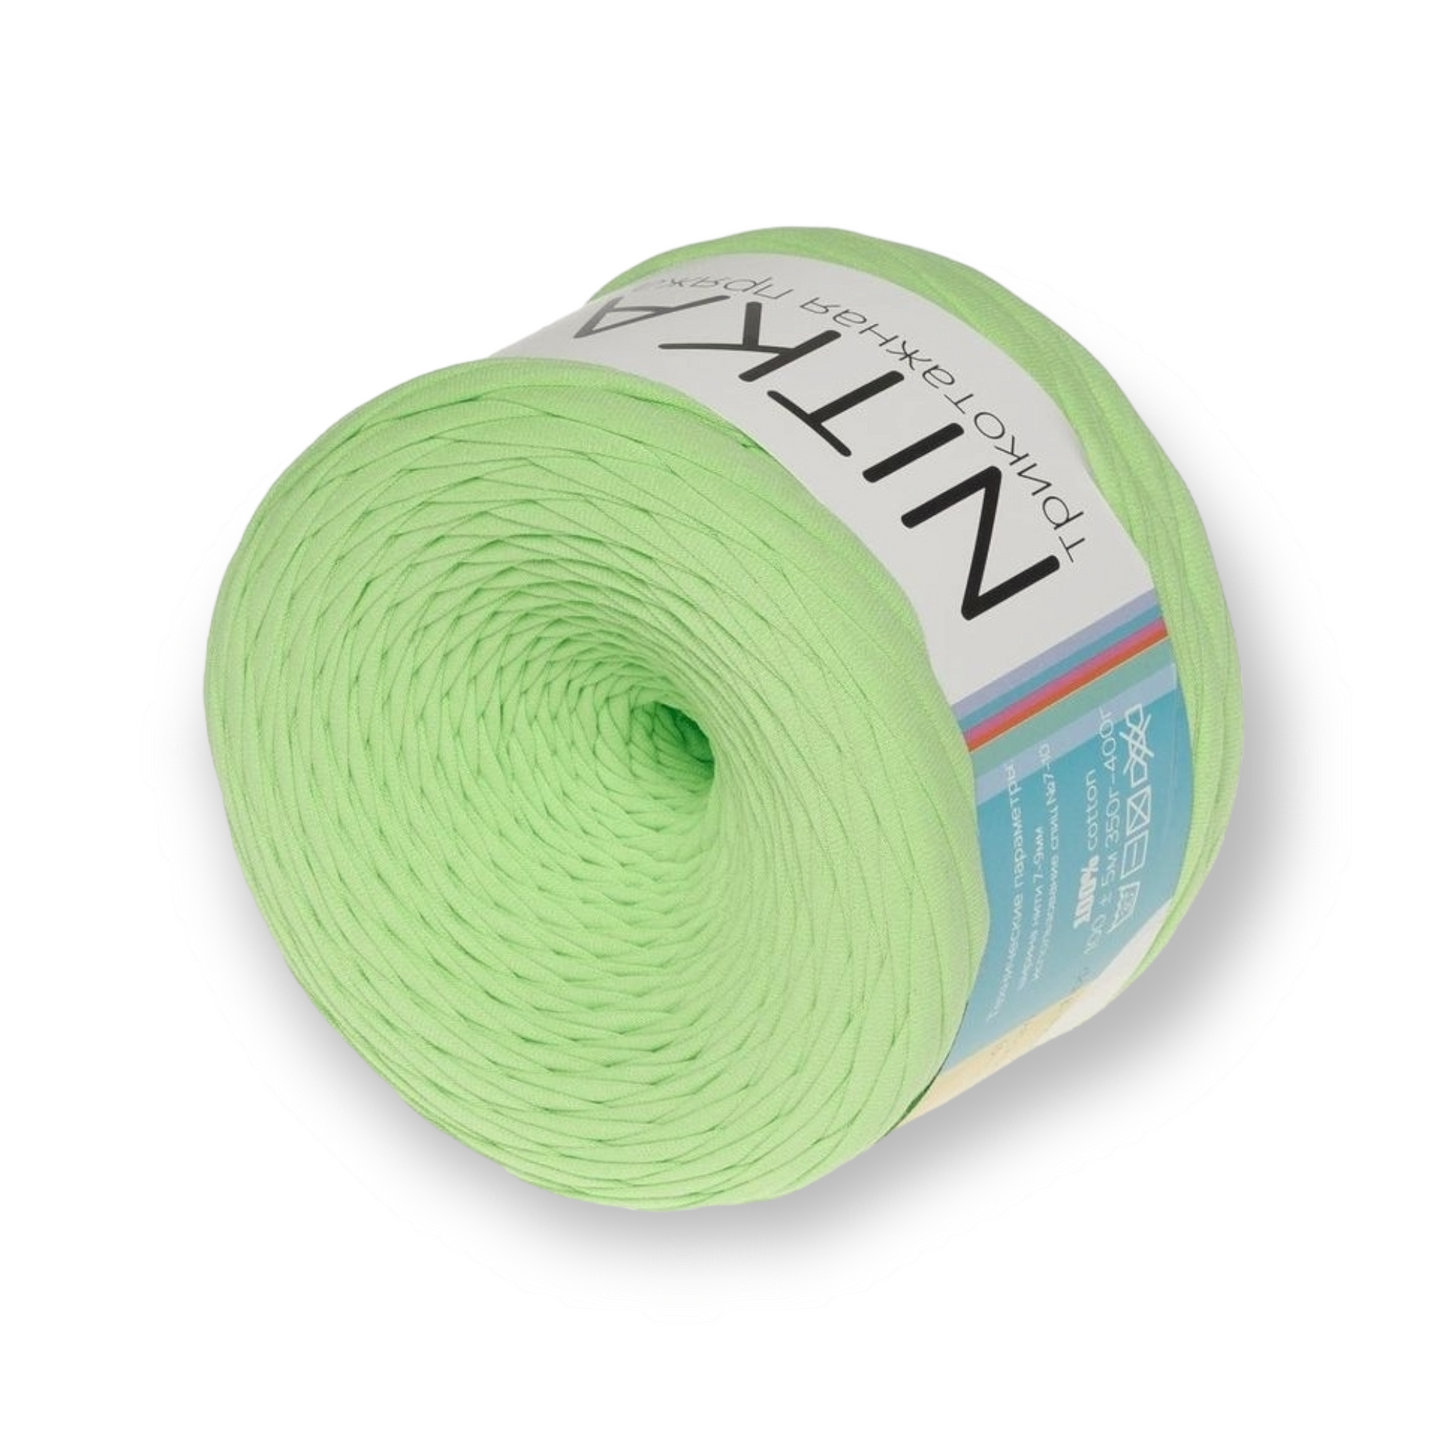 Hilo textil NITKA de Rusia 100% algodón 1A calidad 100 metros rollo siempre ancho constante Jersey cinta Jersey hilo